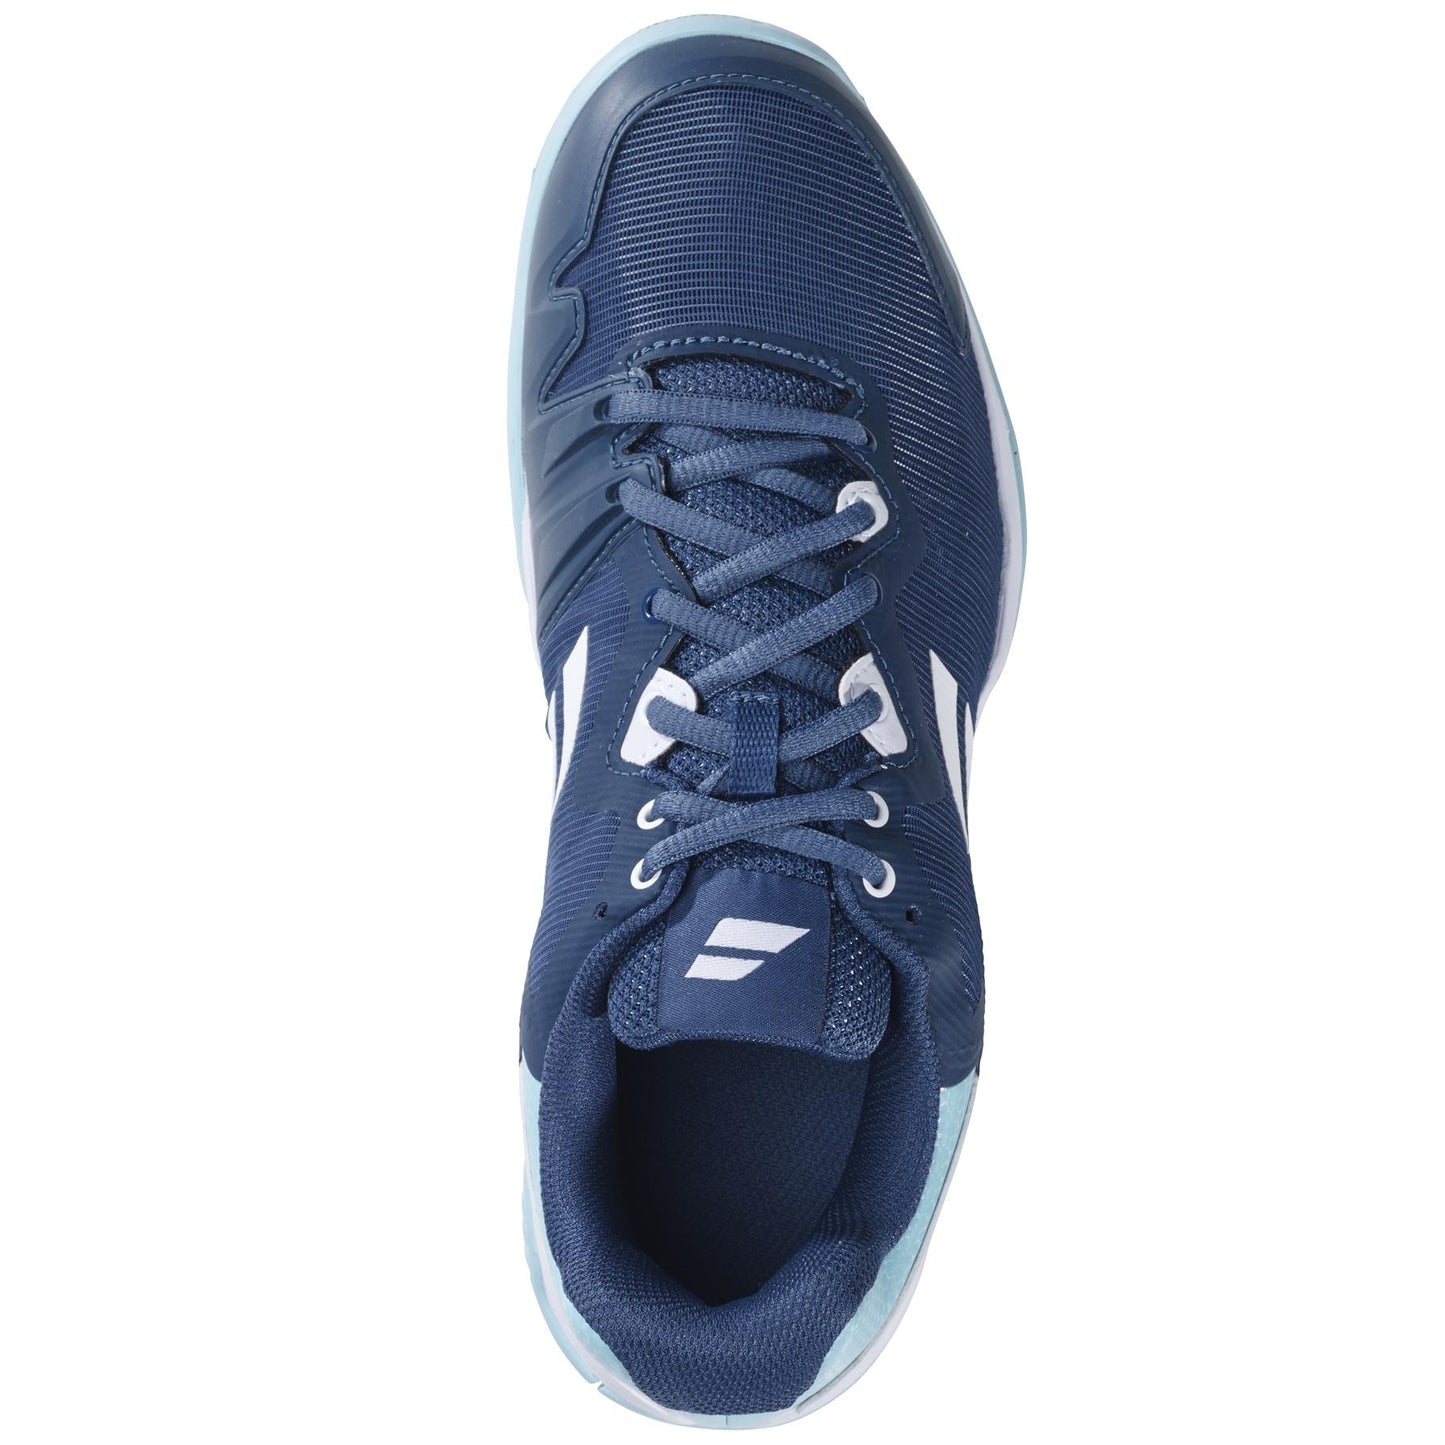 Babolat SFX3 All Court Womens Tennis Shoes - Deep Dive / Blue - Top